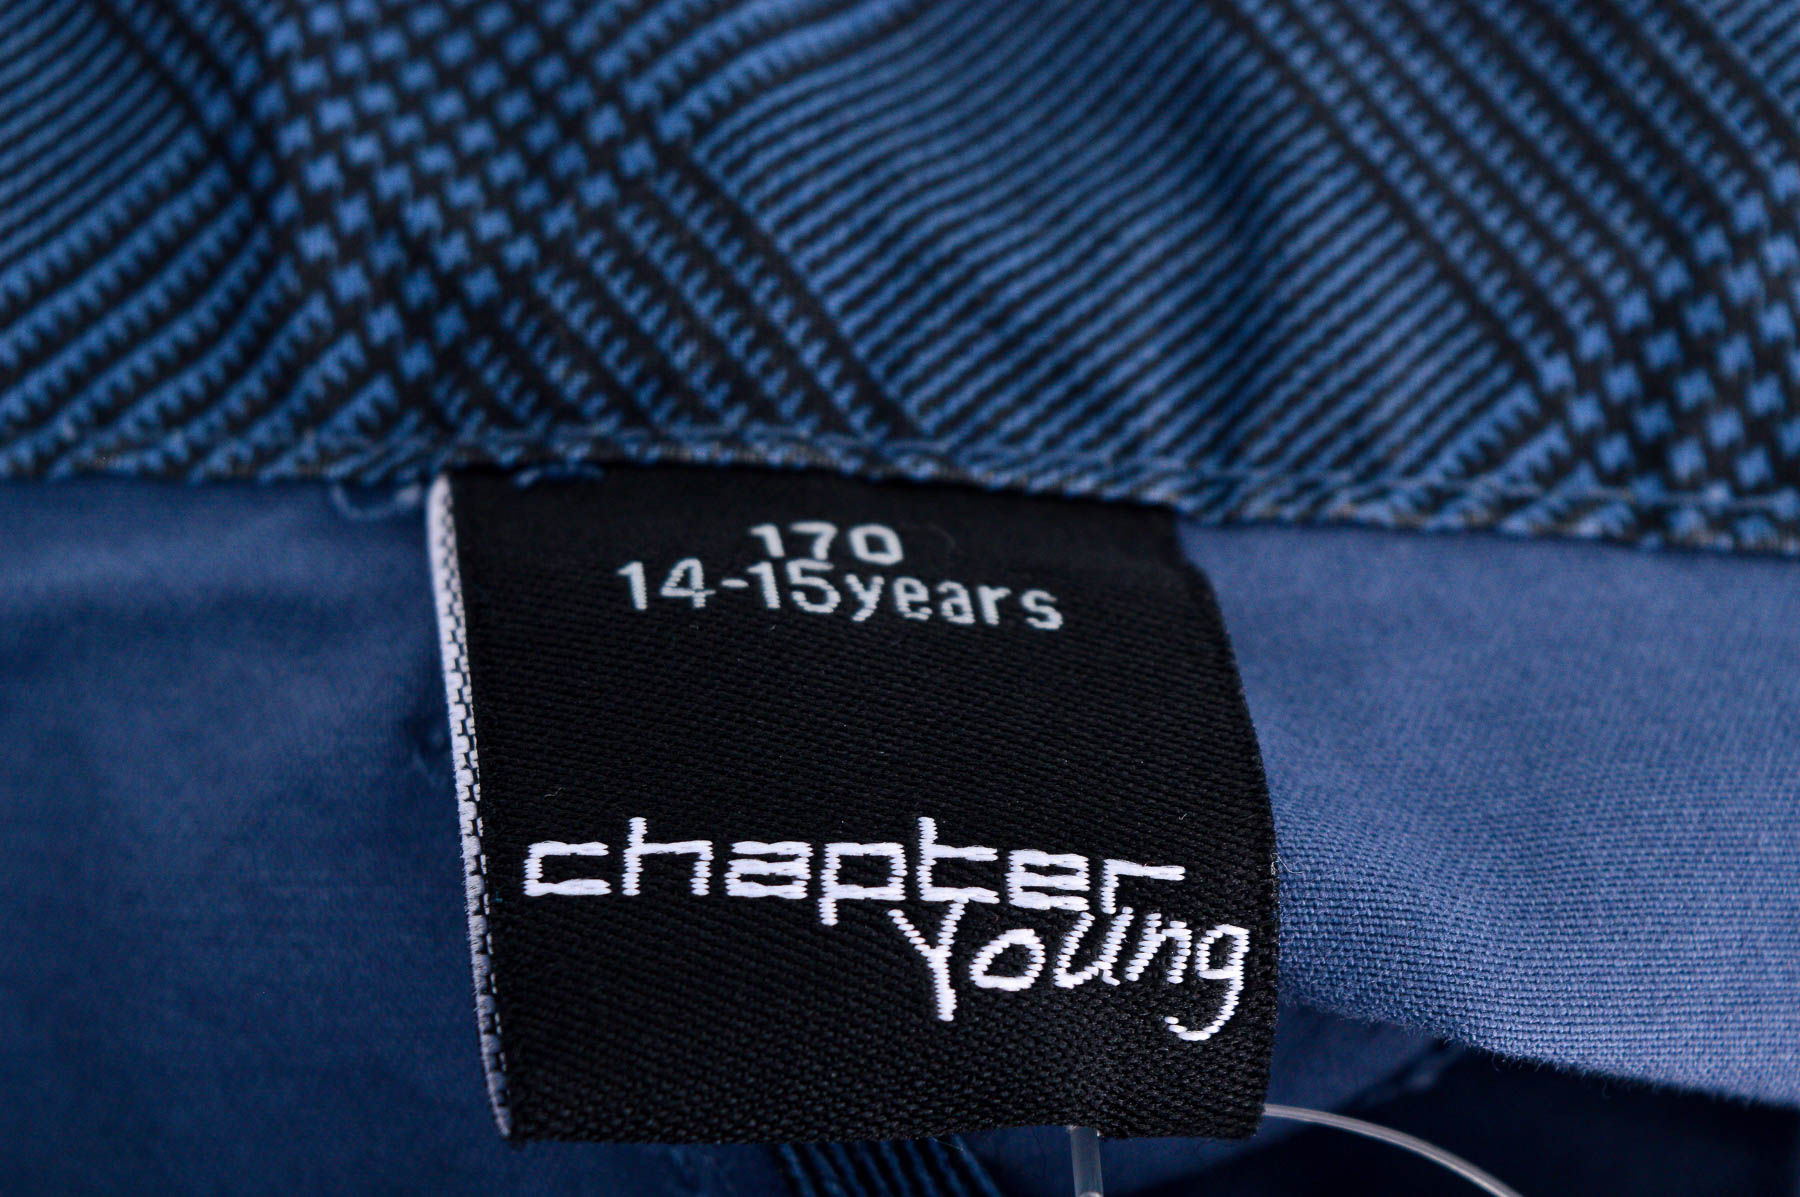 Κοντά παντελόνια για αγόρι - Chapter Young - 2